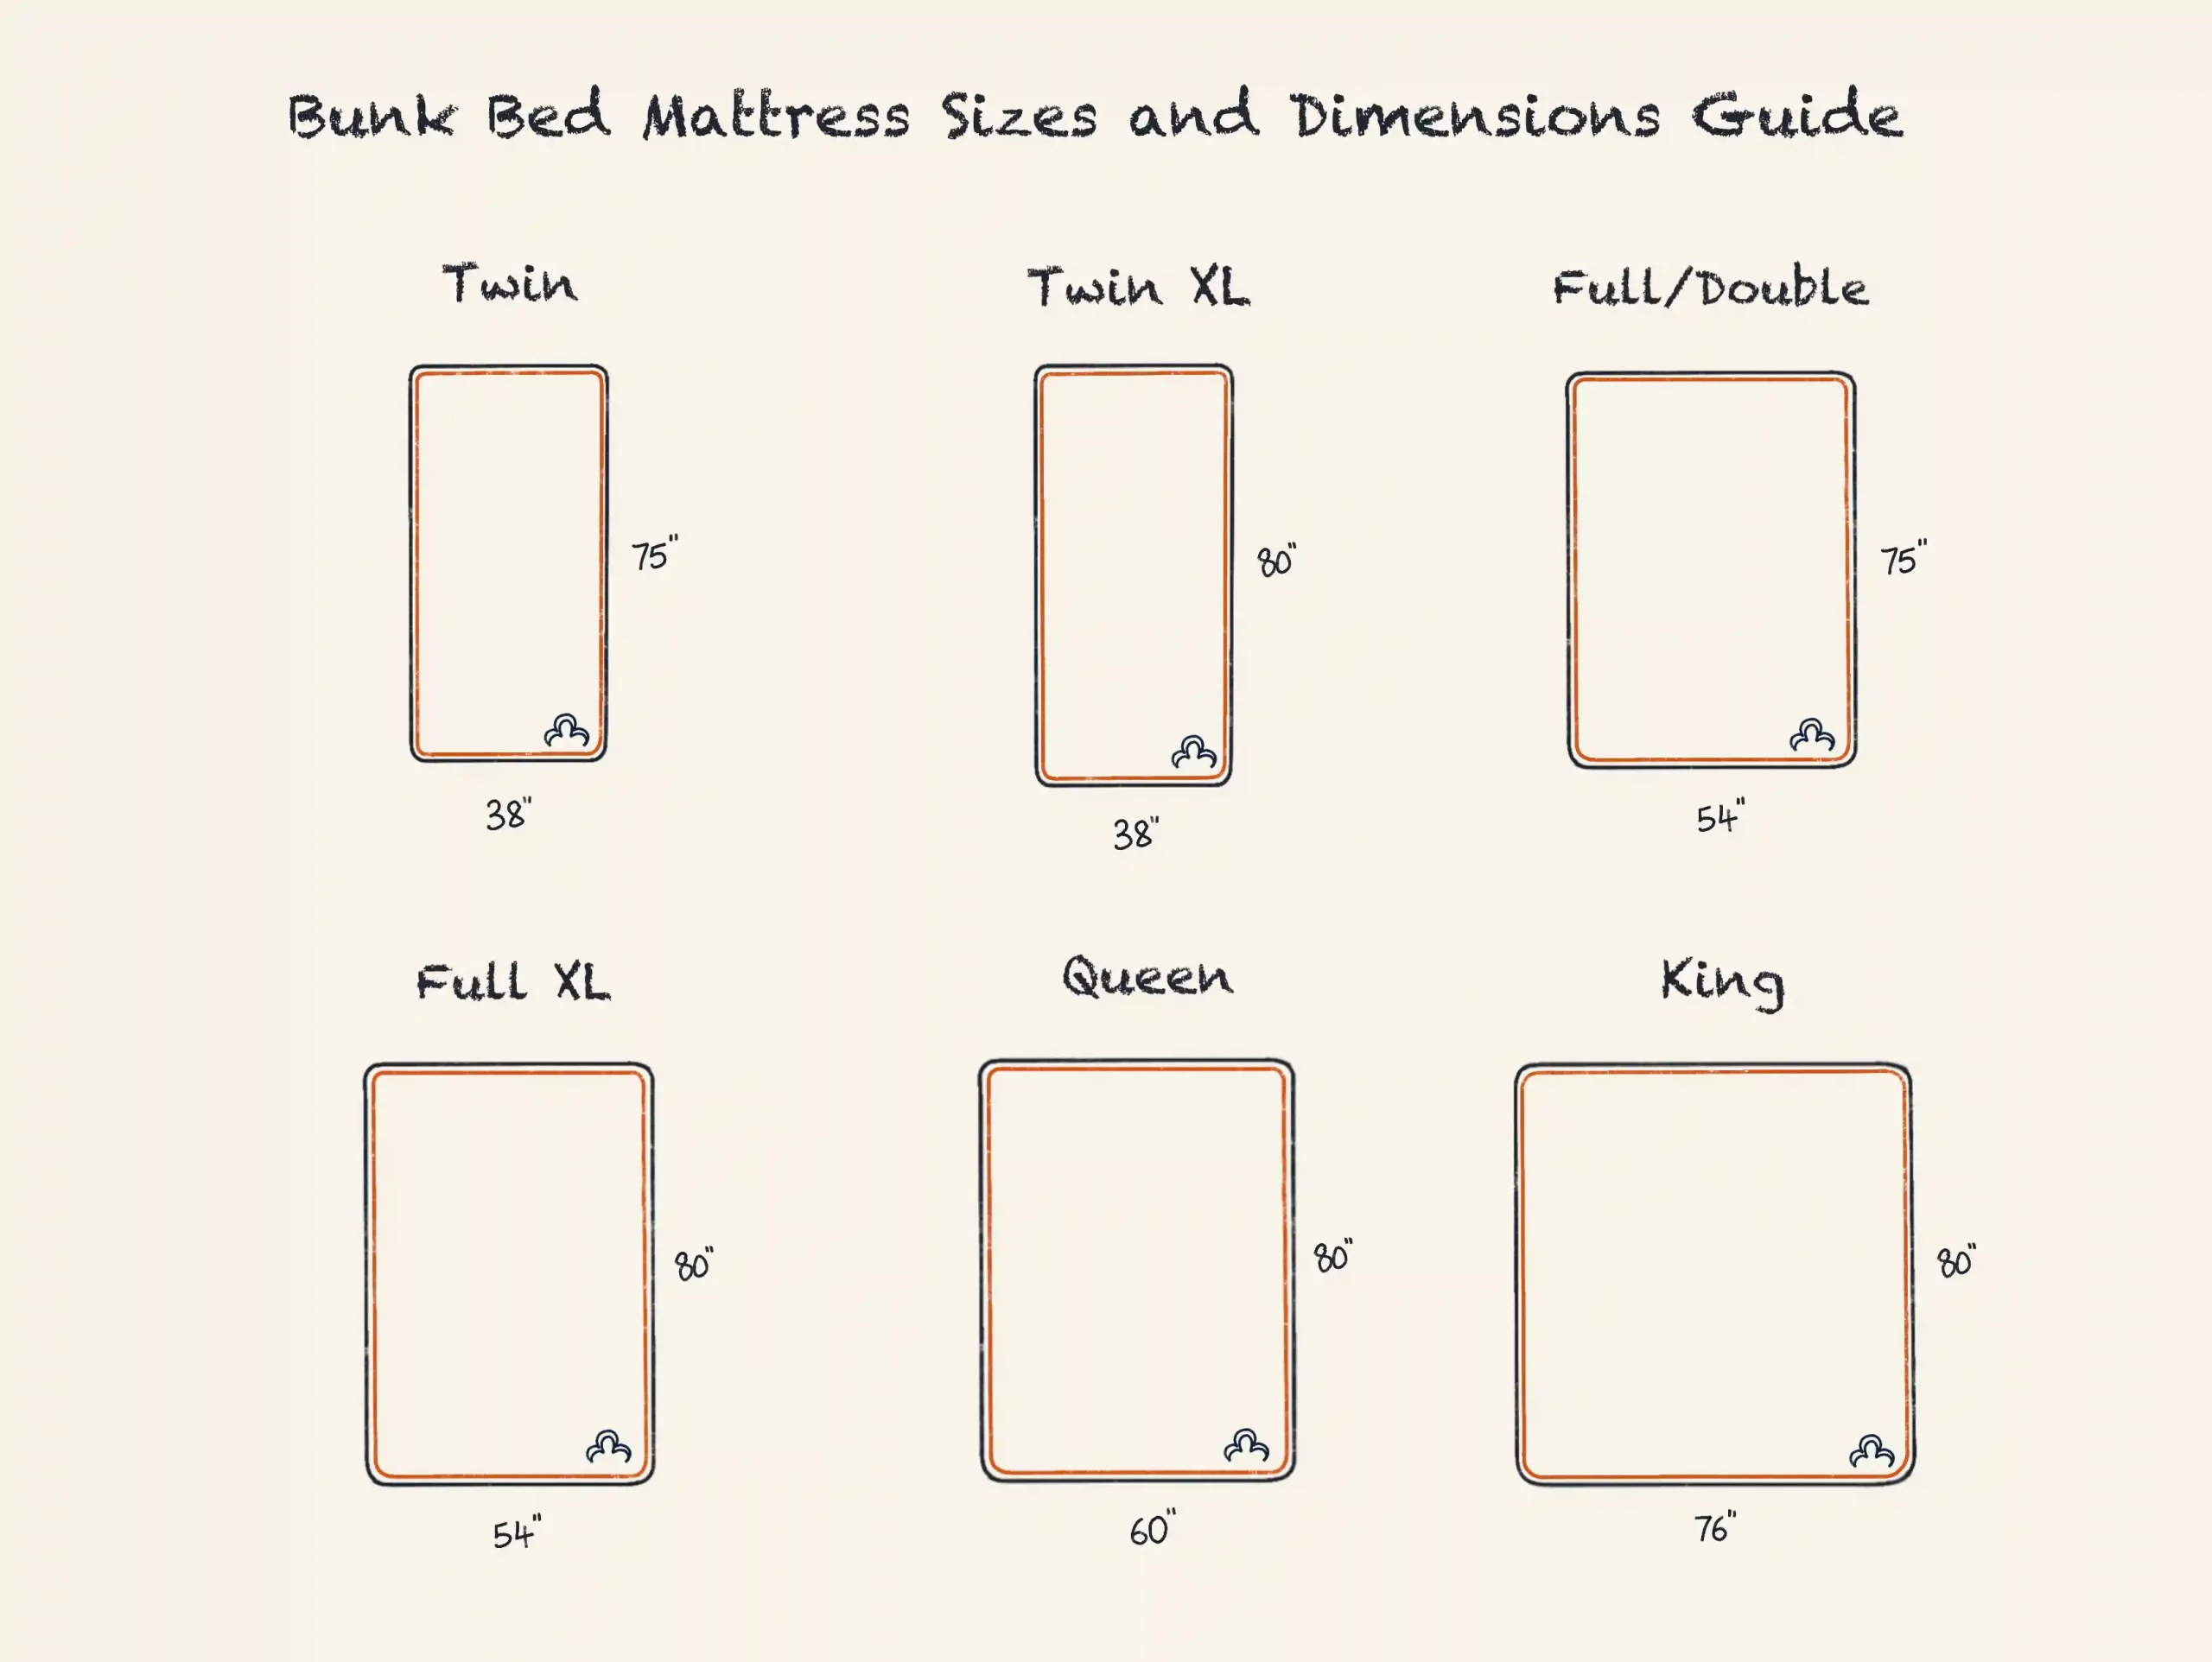 Tips For Choosing A Bunk Bed Mattress